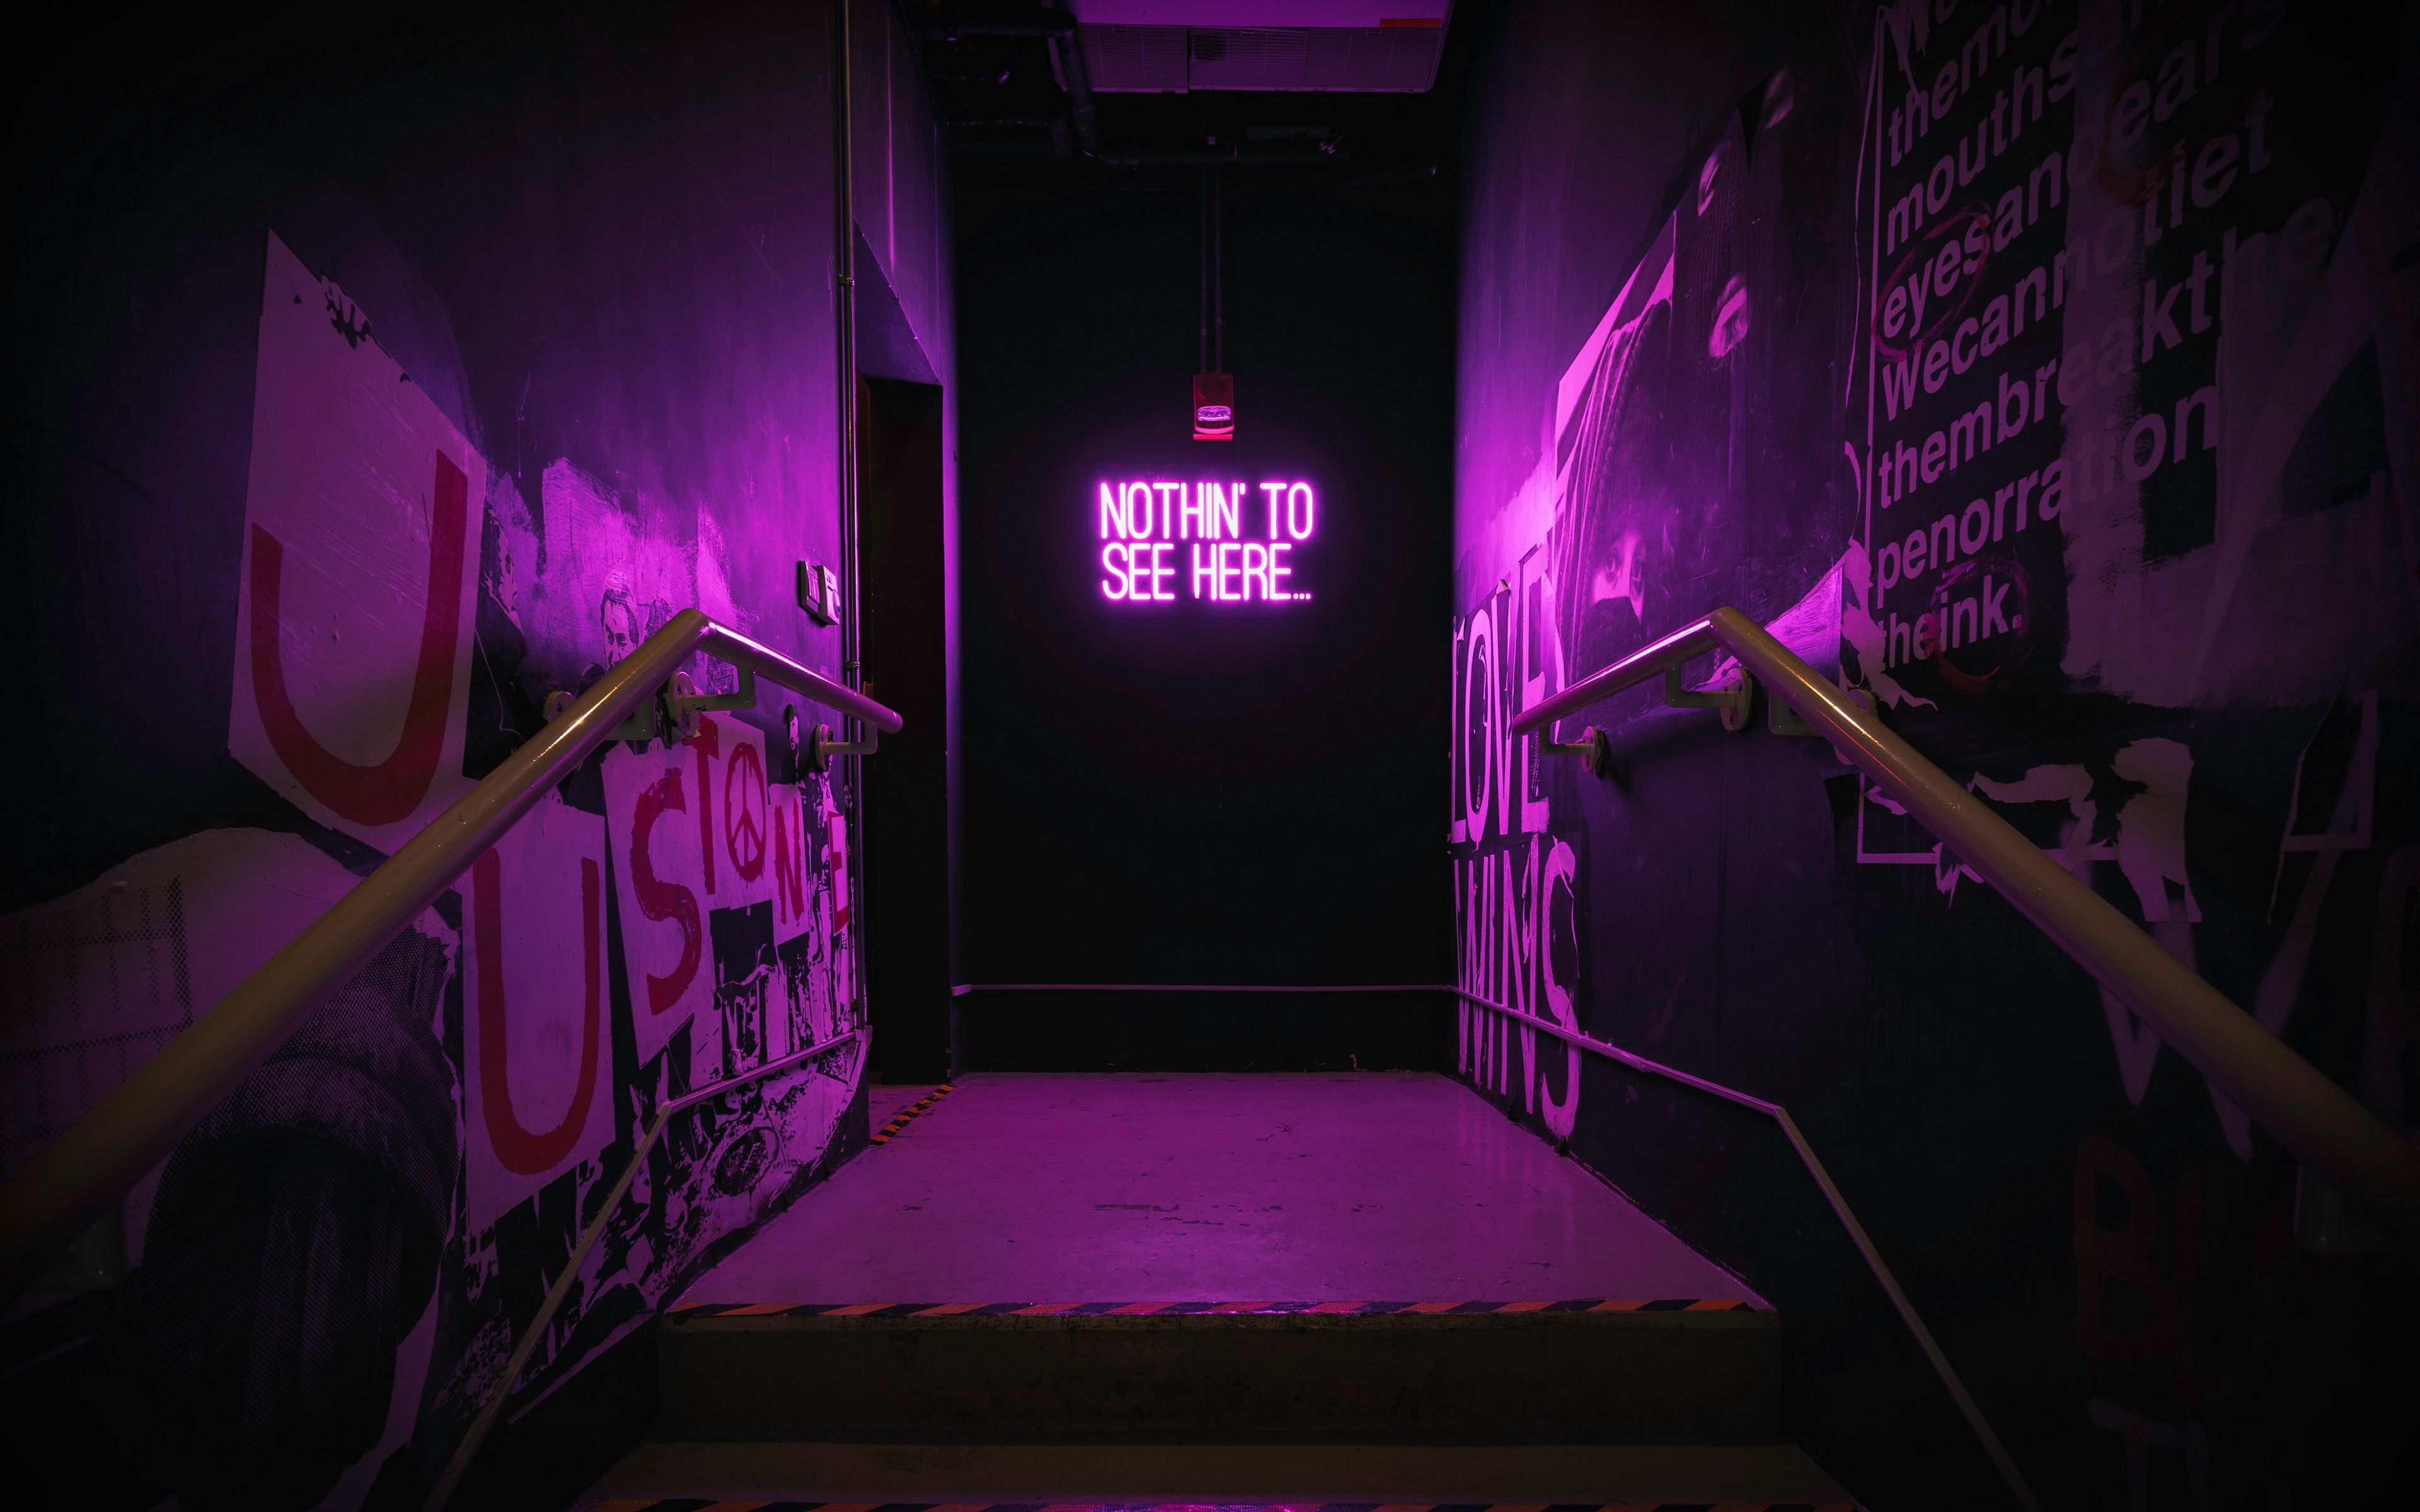 Purple Neon 4k Wallpapers - Wallpaper Cave